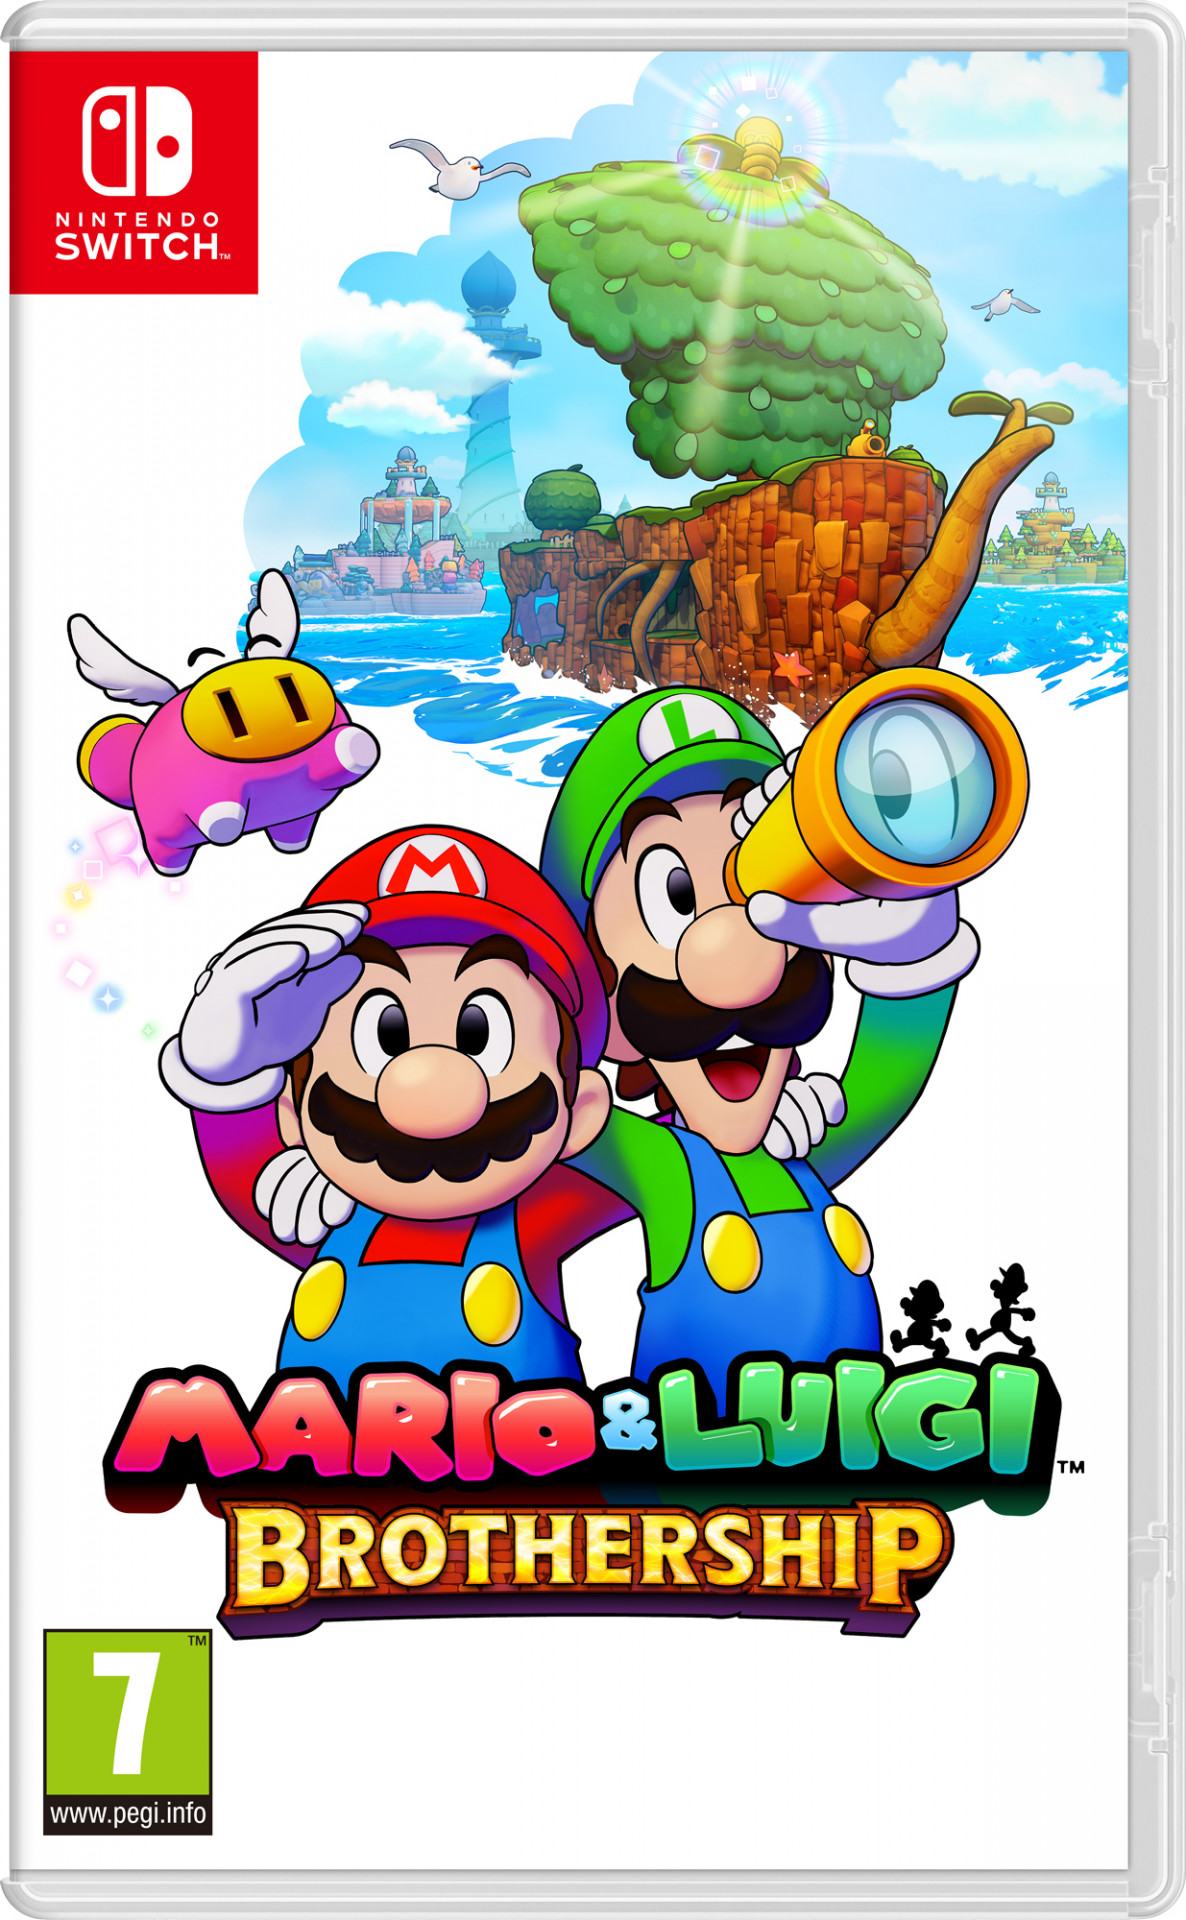 Mario & Luigi Brothership - Nintendo Switch